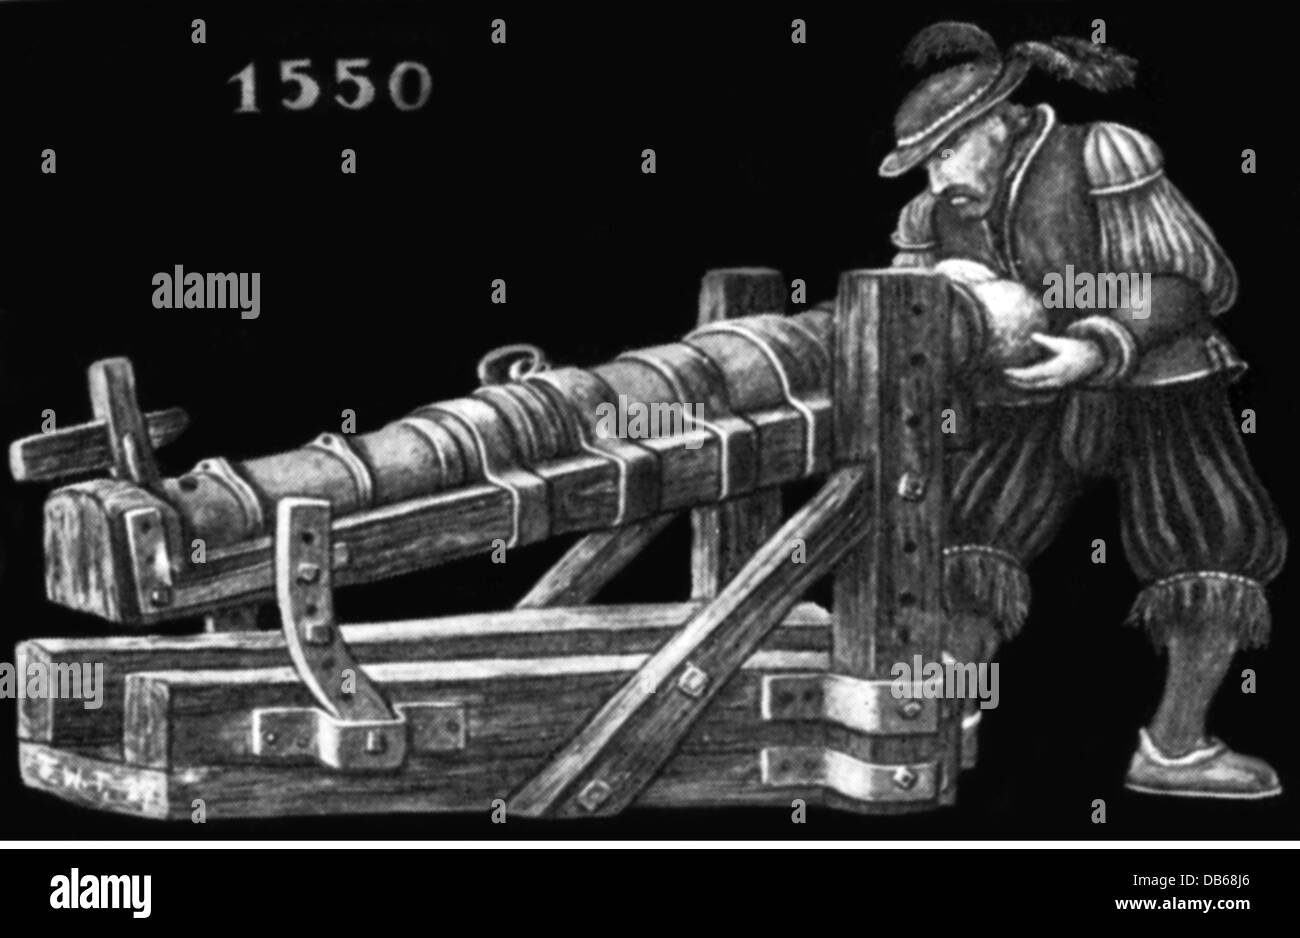 Militaire, artillerie, arme à feu et artileryman, 1550, illustration après une frise "le développement du canon", droits additionnels-Clearences-non disponible Banque D'Images